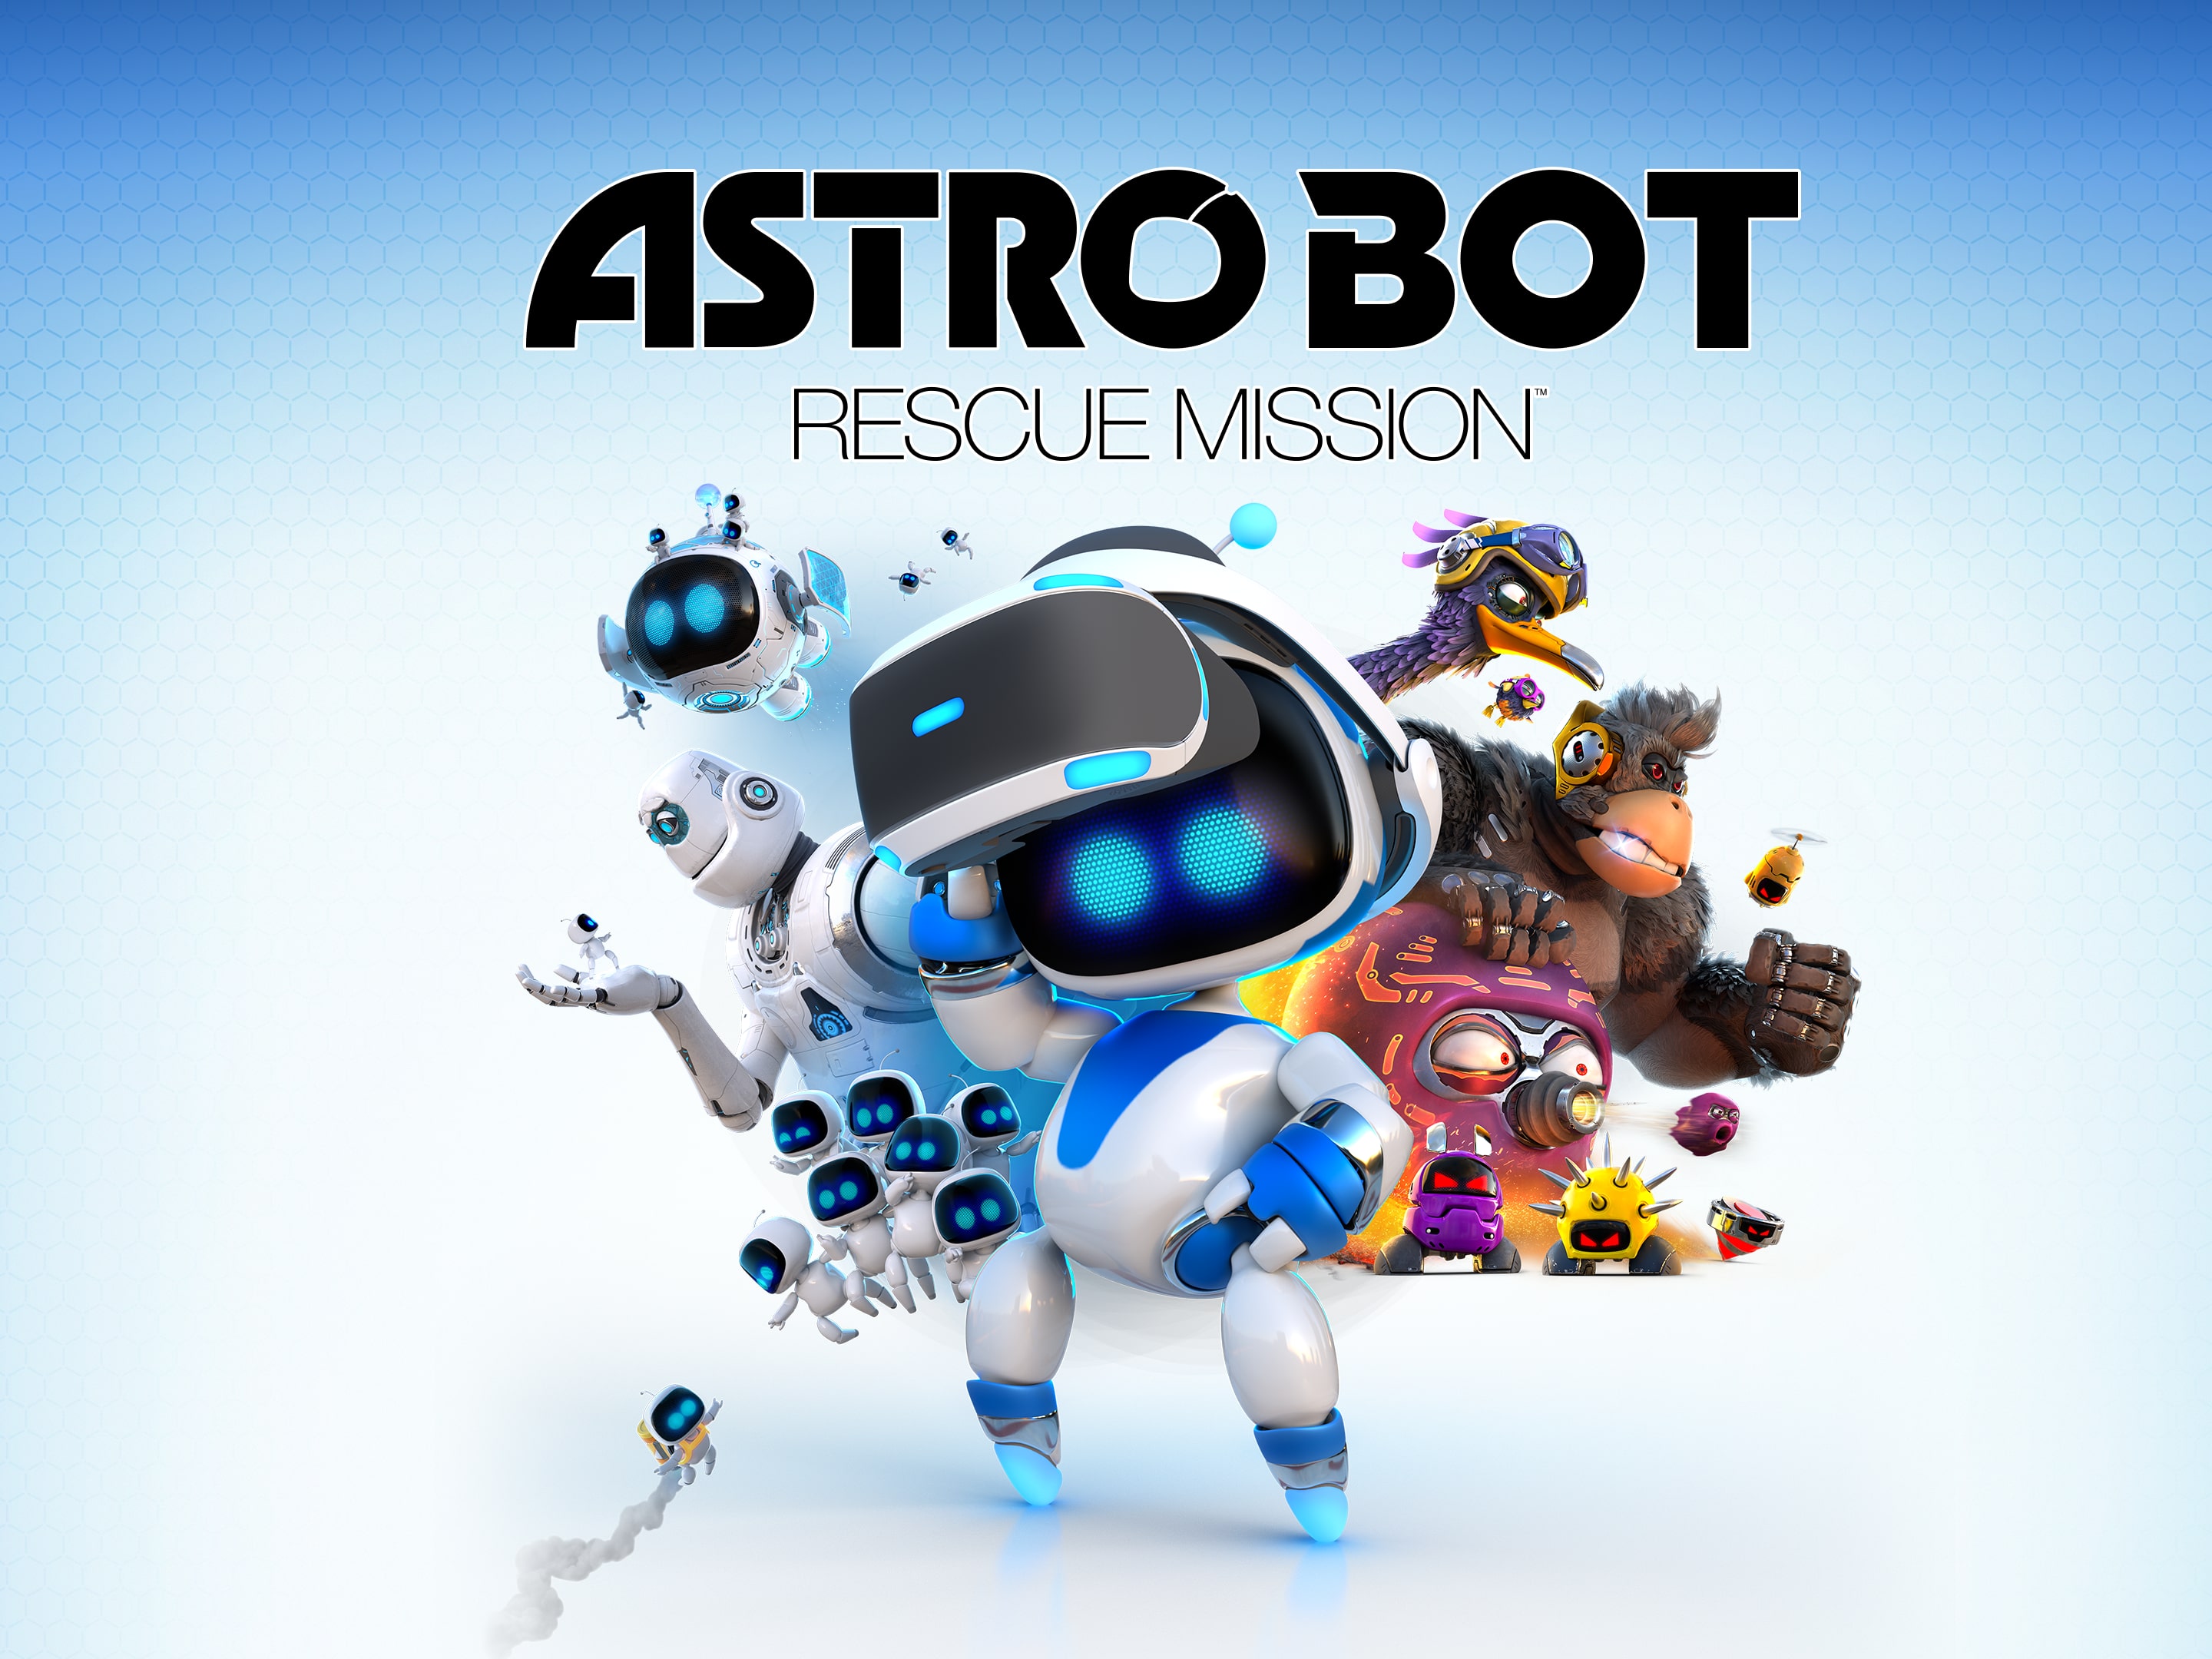 ASTRO BOT: RESCUE MISSION (簡體中文, 韓文, 英文, 泰文, 繁體中文, 日文)